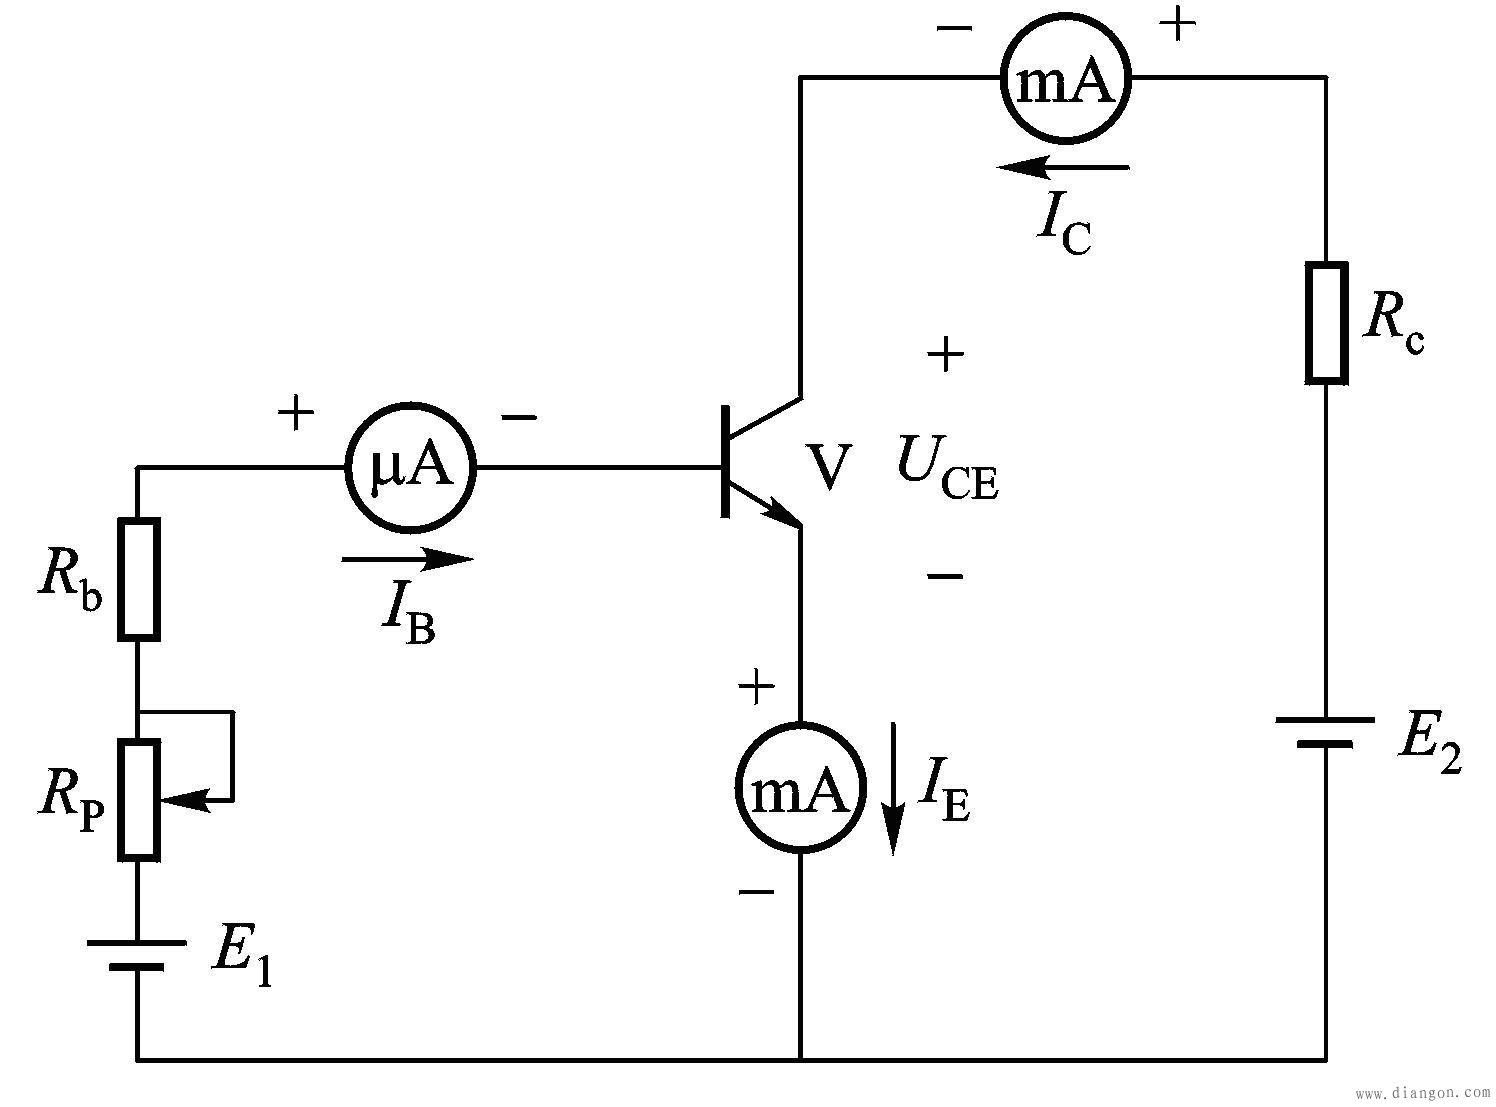 晶体三极管的放大作用实验电路:pnp型如图所示为npn型和pnp型晶